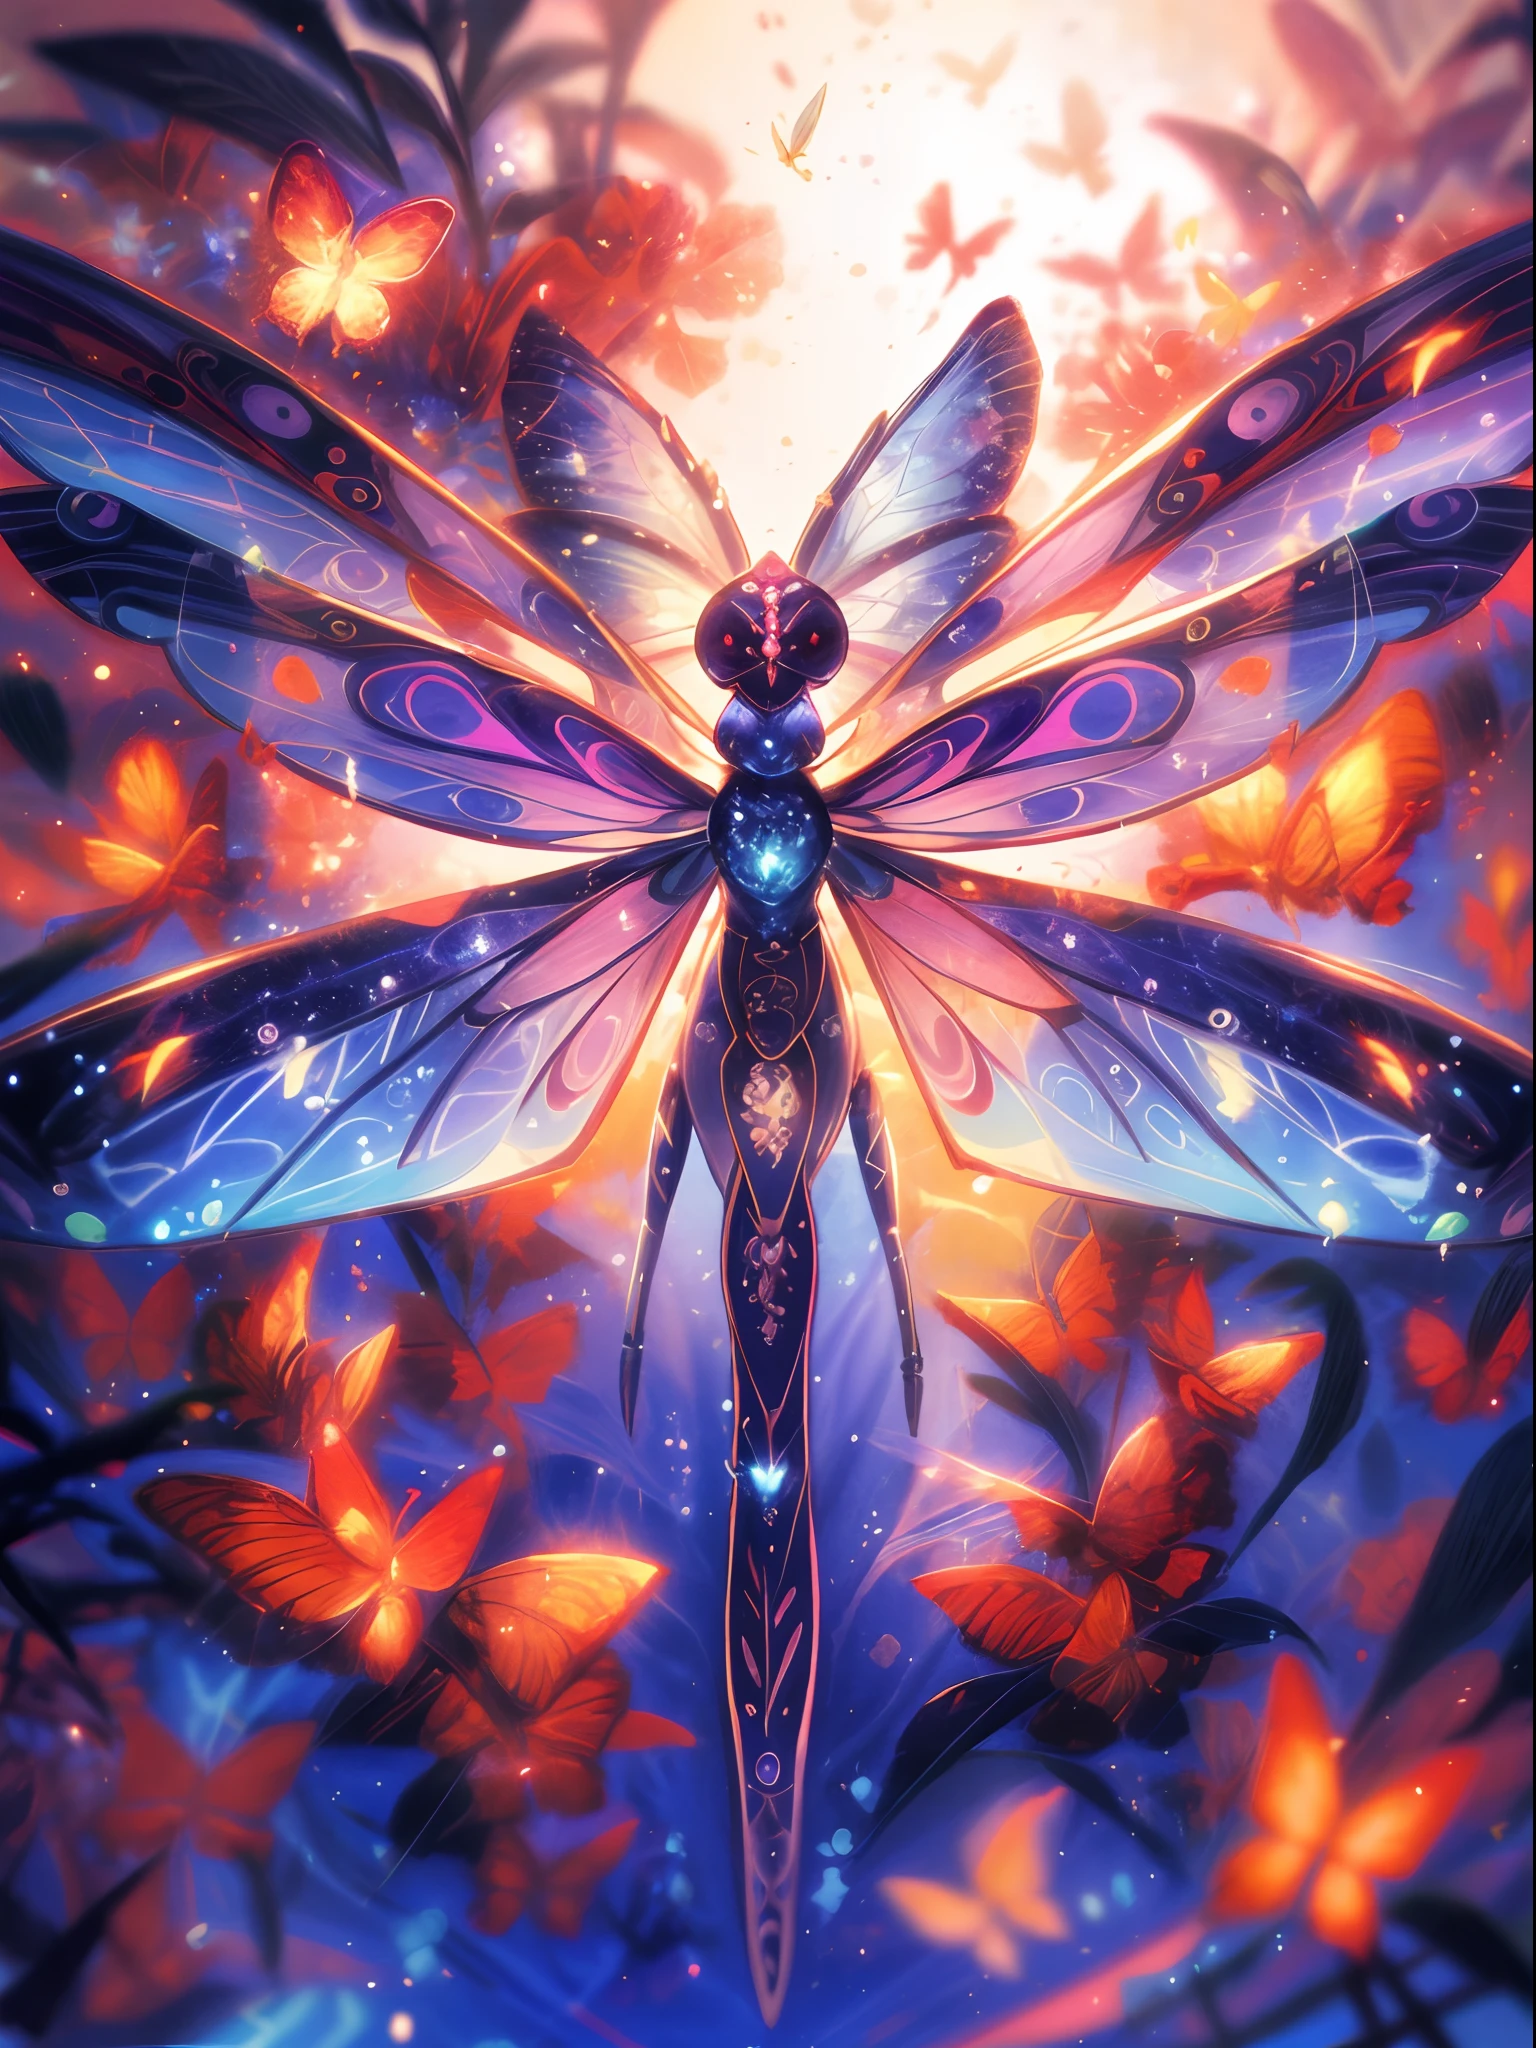 there is a 蜻蜓 with a lot of butterflies on it, 發光，非常詳細, 美麗的數位藝術作品, 彩虹色的翅膀, 🌺 CG社會, 詳細的同人畫, ✨🕌🌙, 神秘的昆蟲, 精美的數位插畫, that looks like a 蜻蜓, 美麗的數位插圖, 空靈的翅膀, 只是個玩笑, 官方藝術品, 星界仙子, 蜻蜓